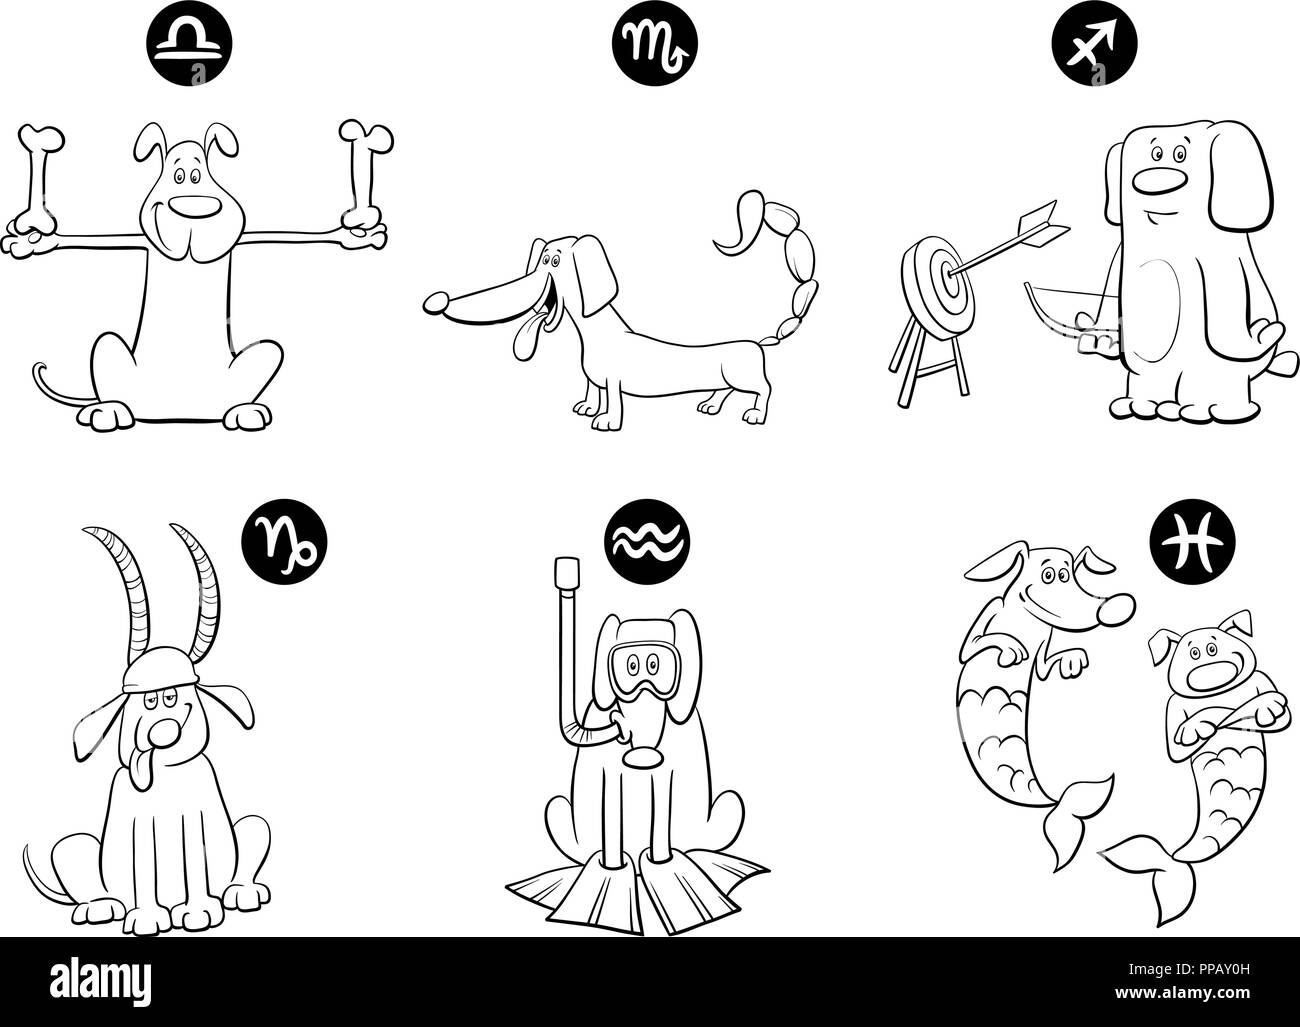 Cartoon noir et blanc Illustration de signes du zodiaque Horoscope chien avec caractères Illustration de Vecteur